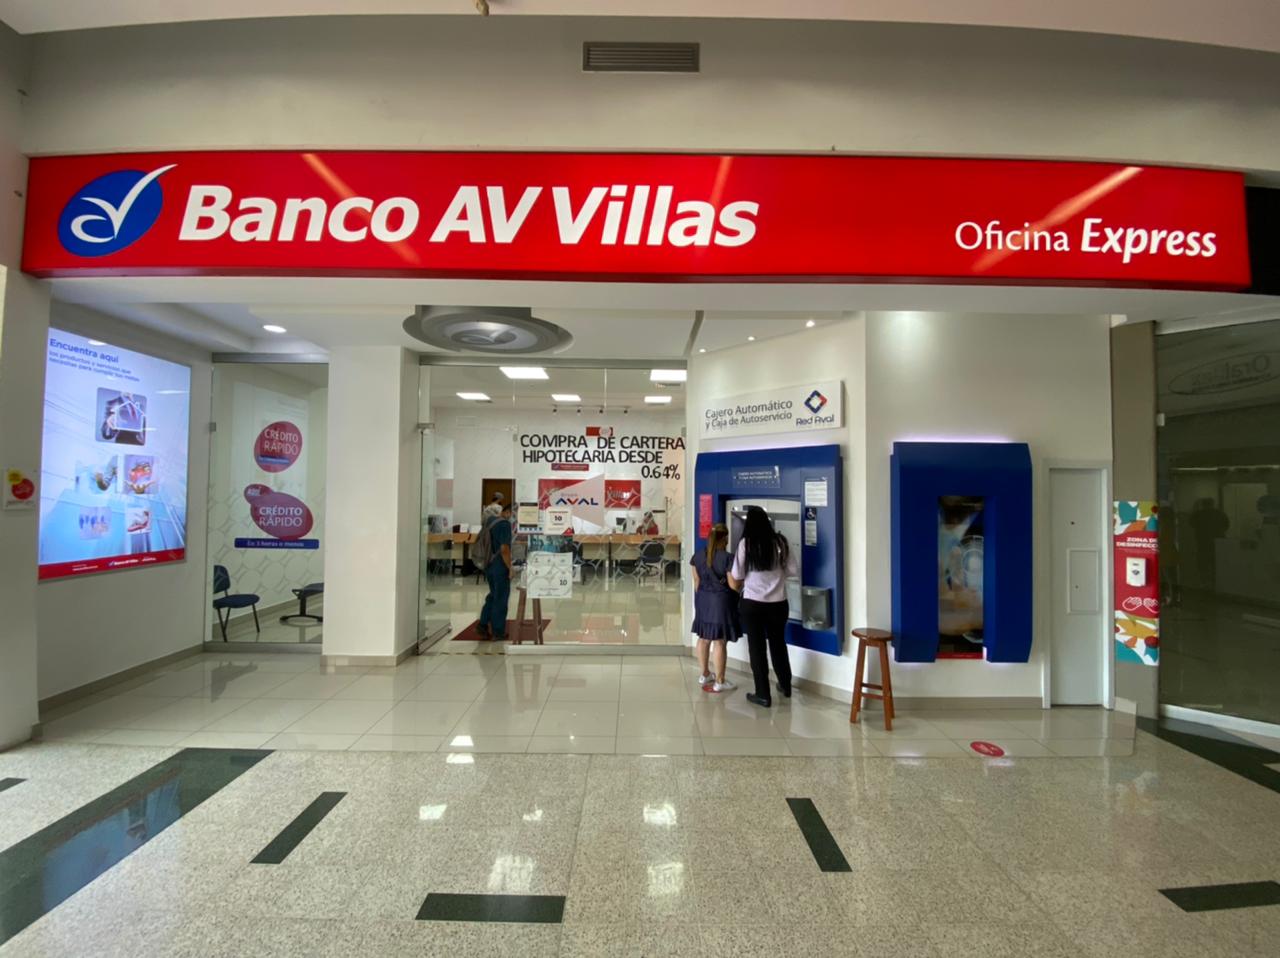 Banco AV Villas Oficina Express